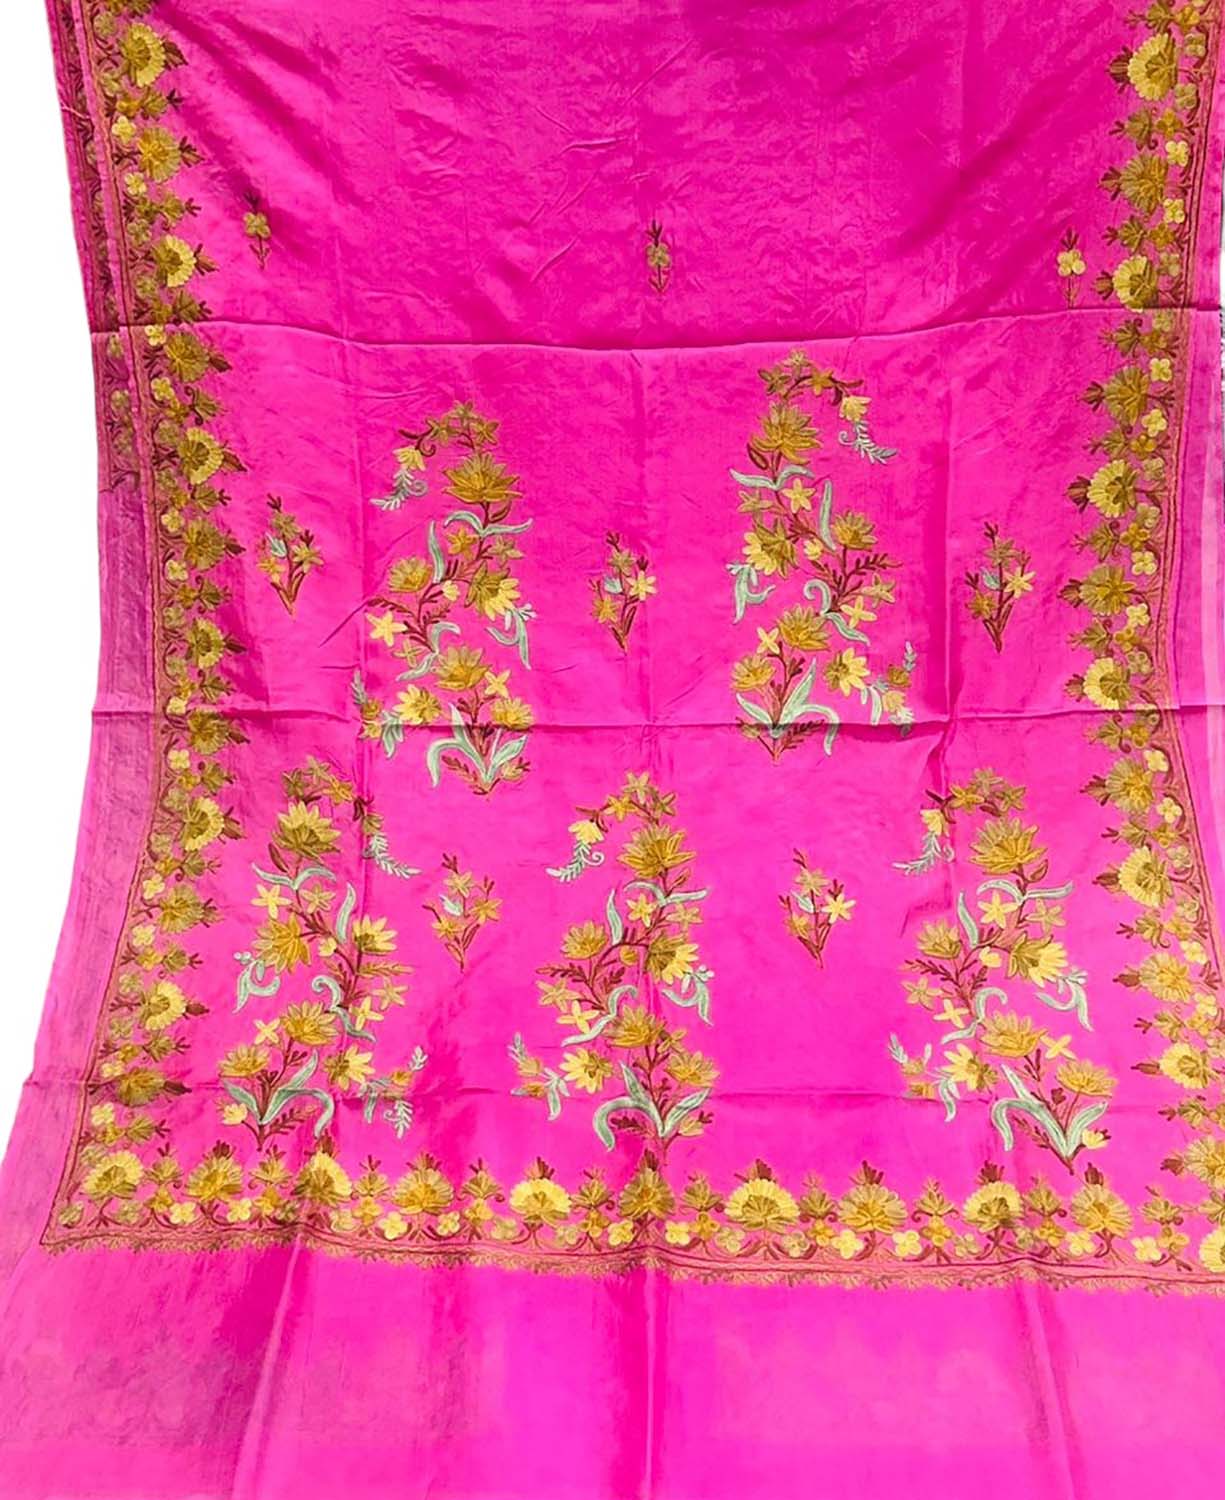 Stunning Pink Silk Saree with Intricate Kashmiri Aari Embroidery